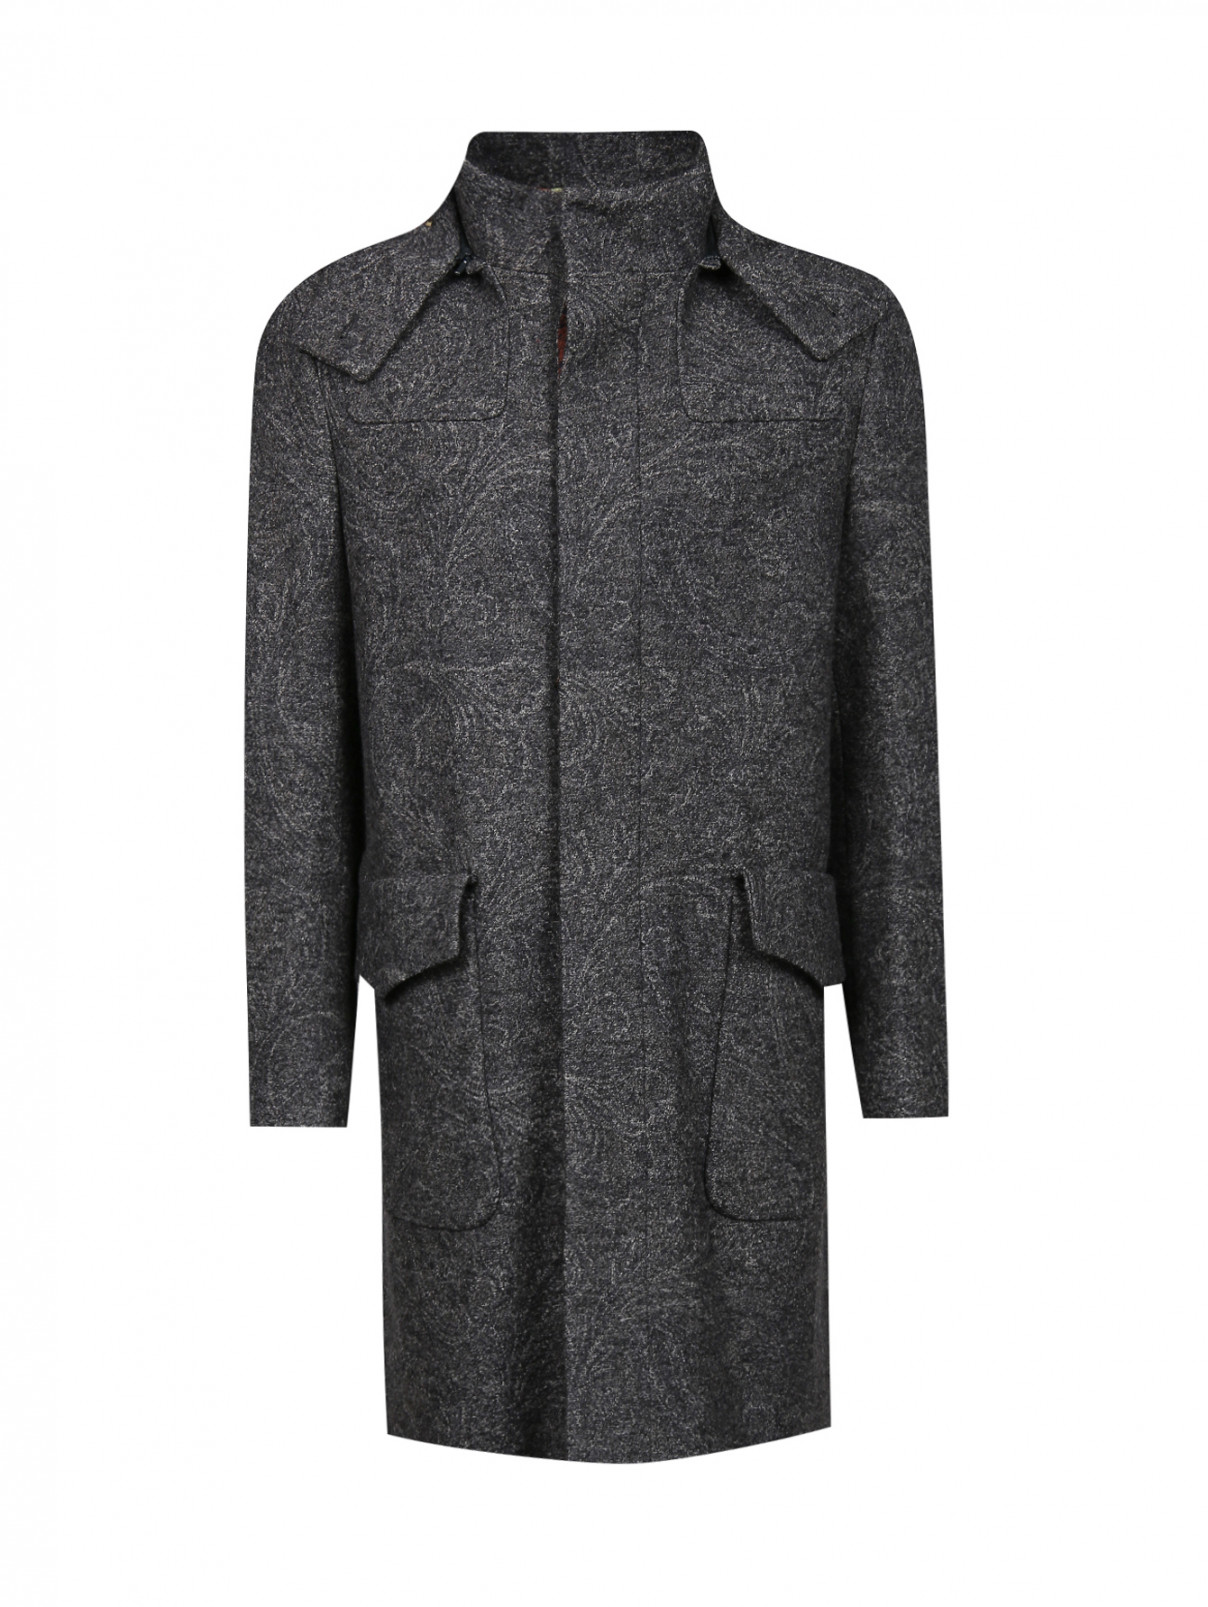 Пальто из шерсти с узором Etro  –  Общий вид  – Цвет:  Серый